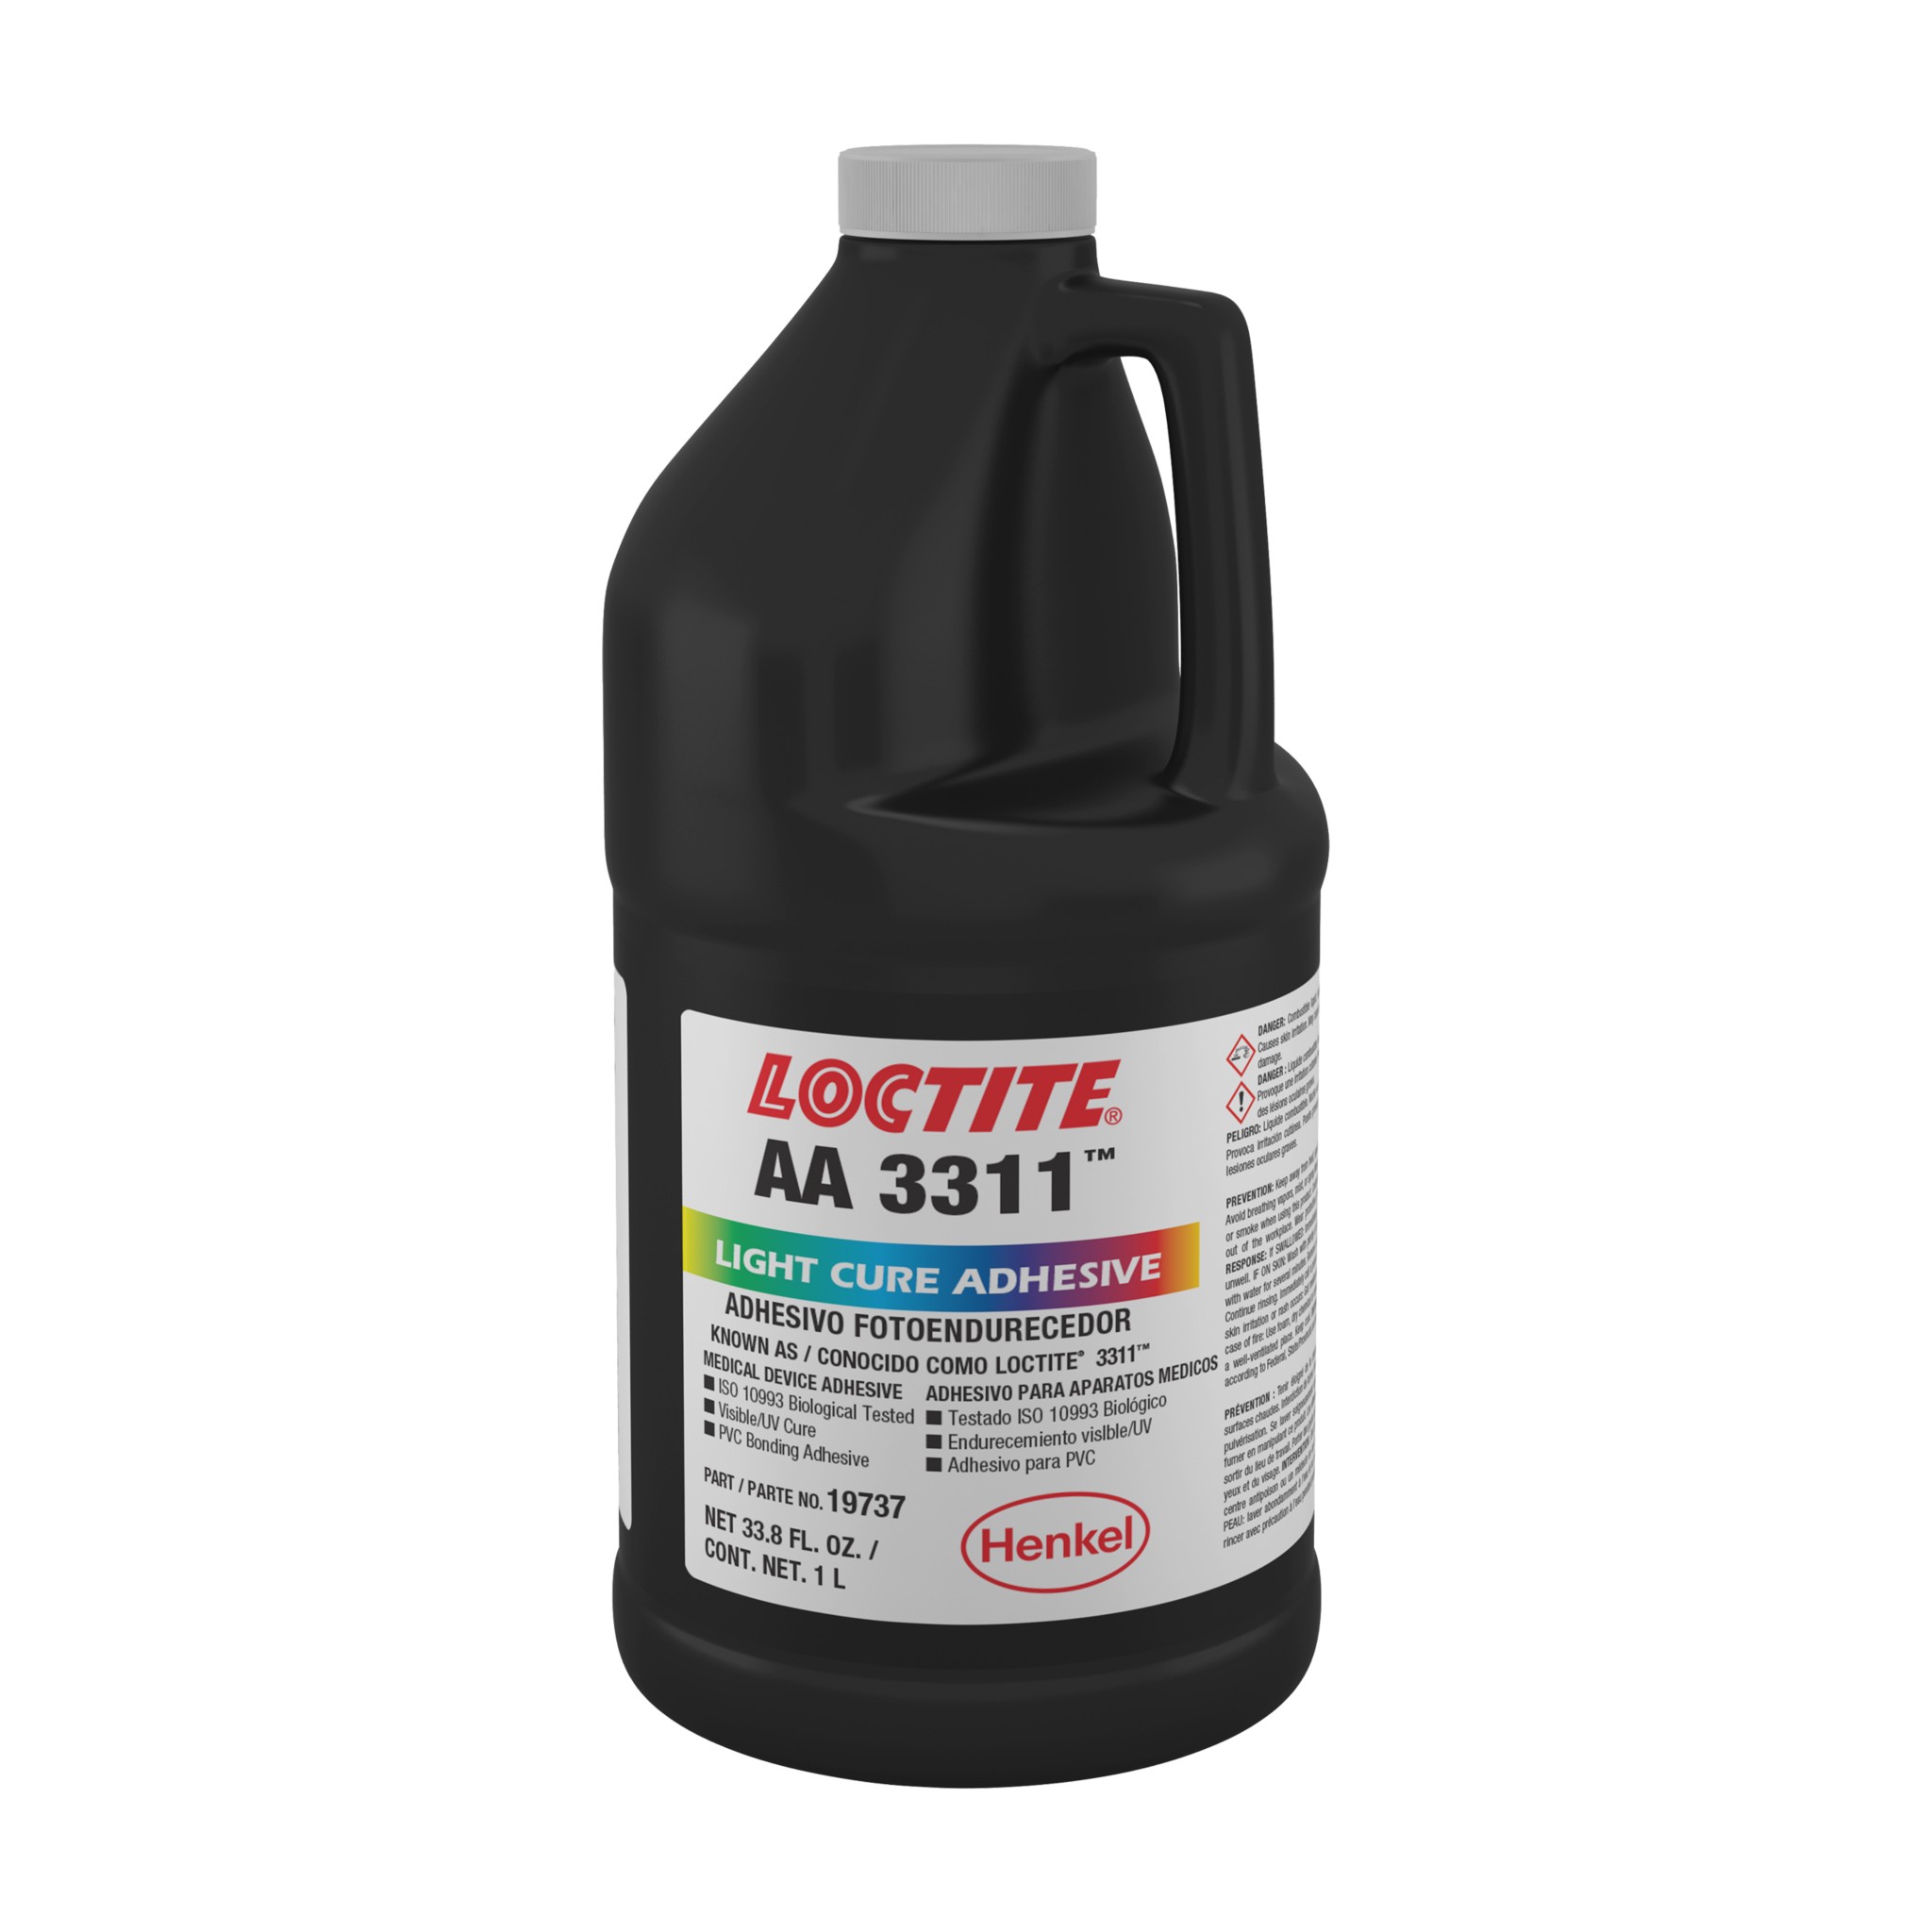 Loctite Adhesivo en aerosol de rendimiento profesional, 13.5 onzas, 6, lata